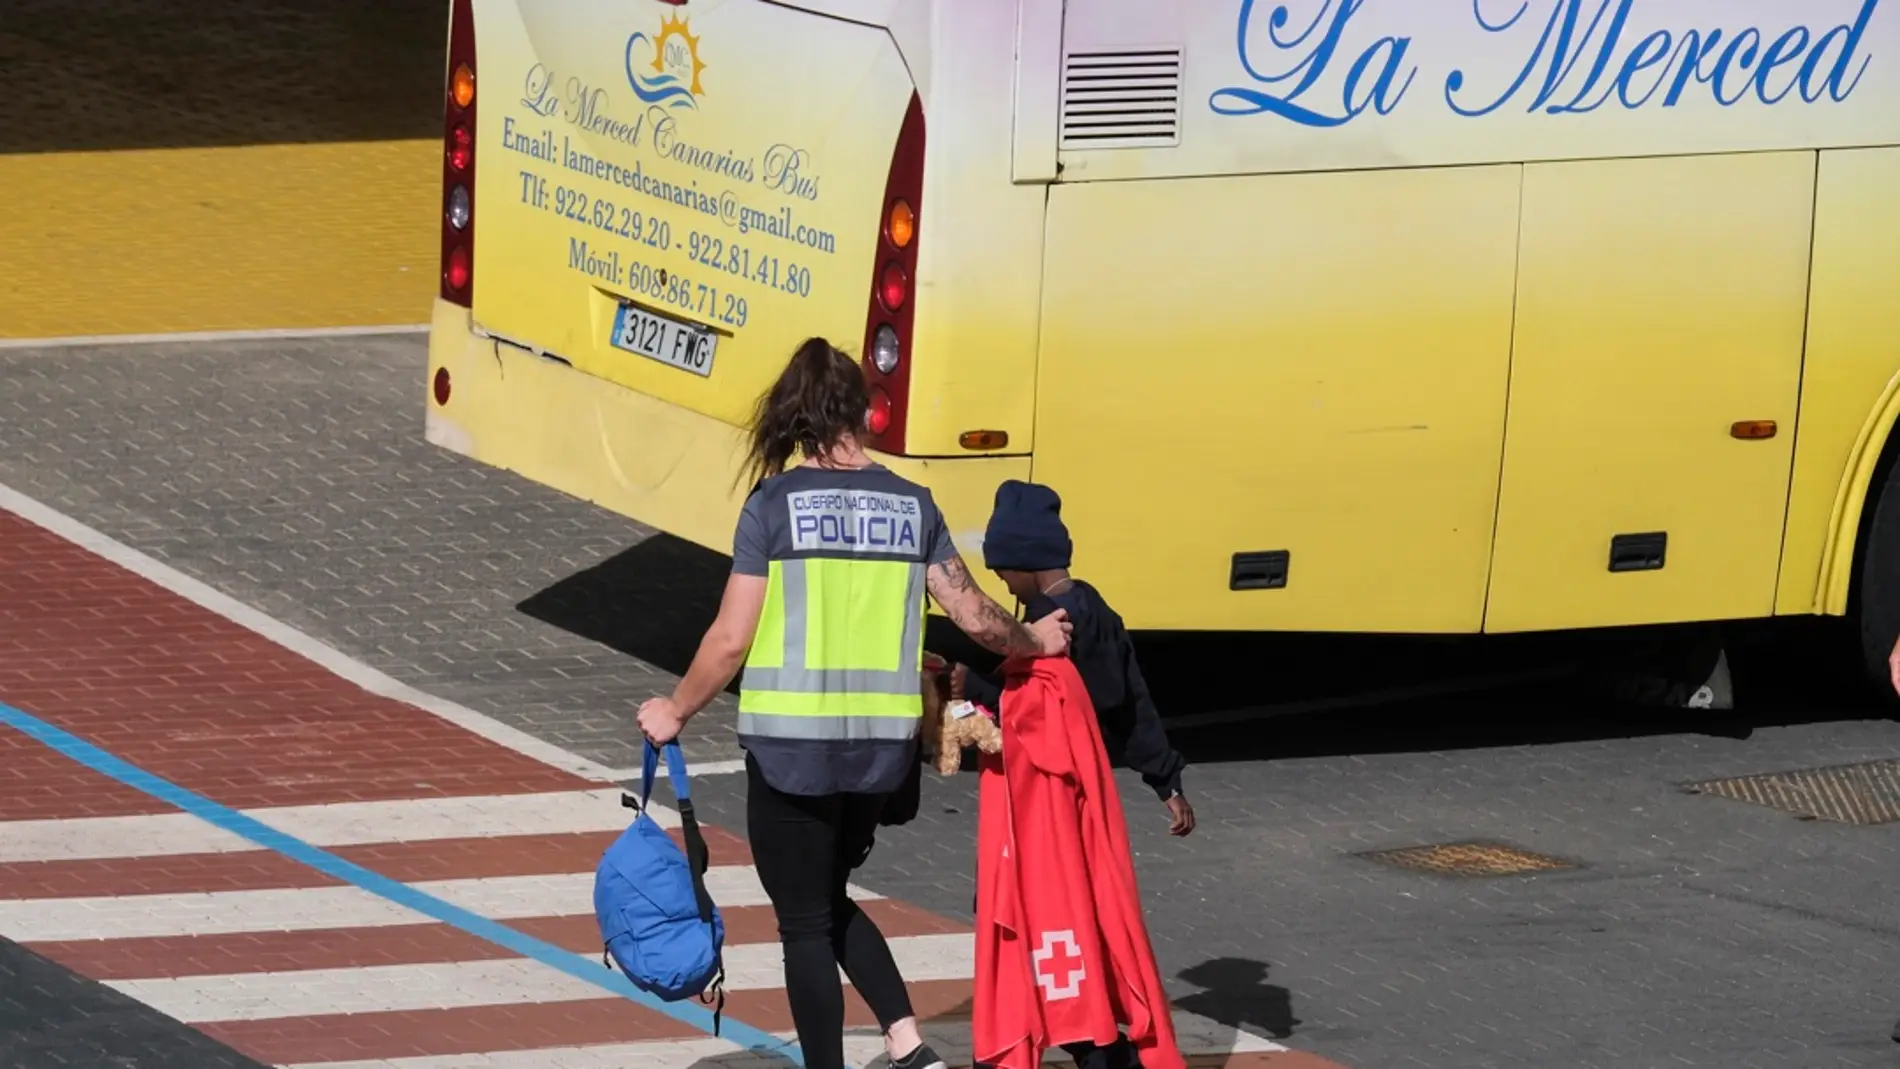 Imagen de archivo de uno de los menores rescatado y atendido por una policía tras la llegada del crucero Insignia al puerto de Santa Cruz de Tenerife. EFE/Alberto Valdés